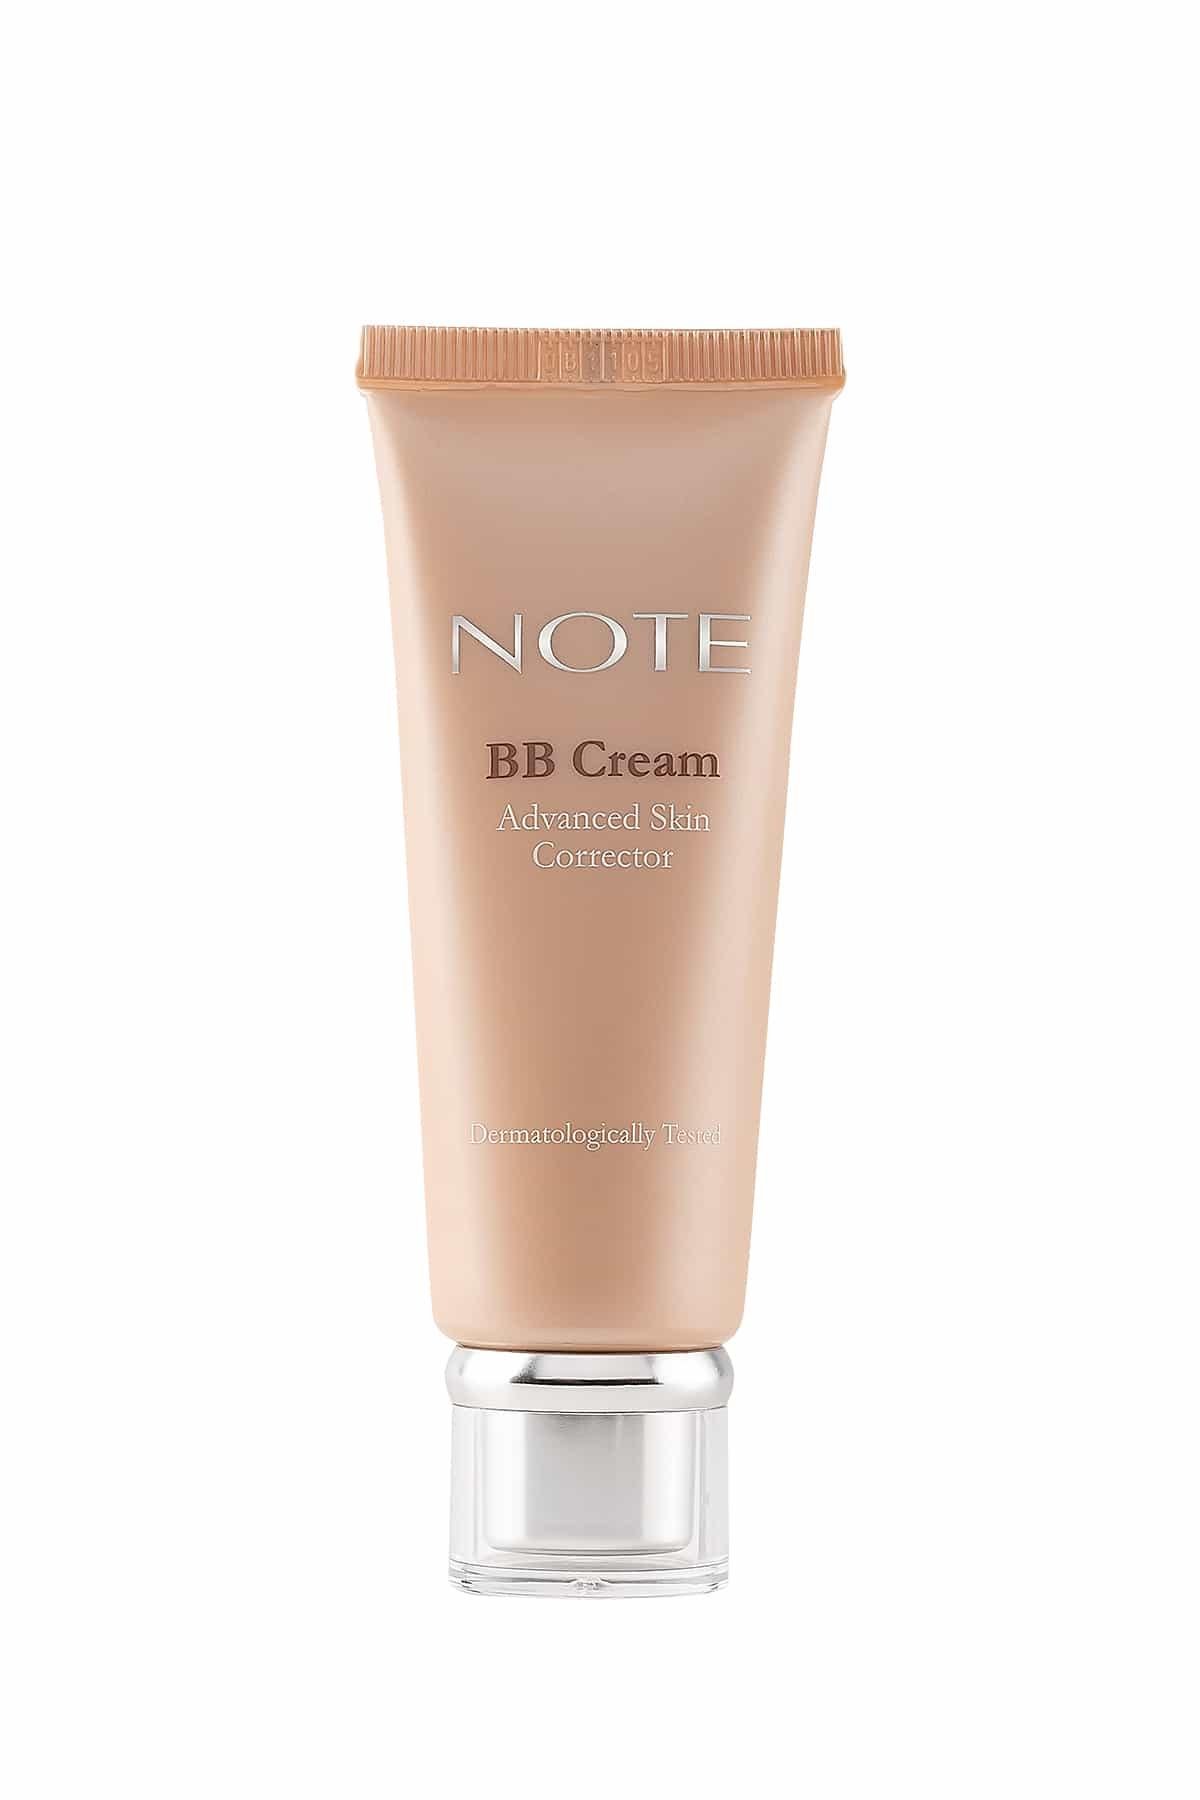 Note BB Cream - BB Krem Doğal Kapatıcılık 200 Soft Ivory | Note Cosmetique